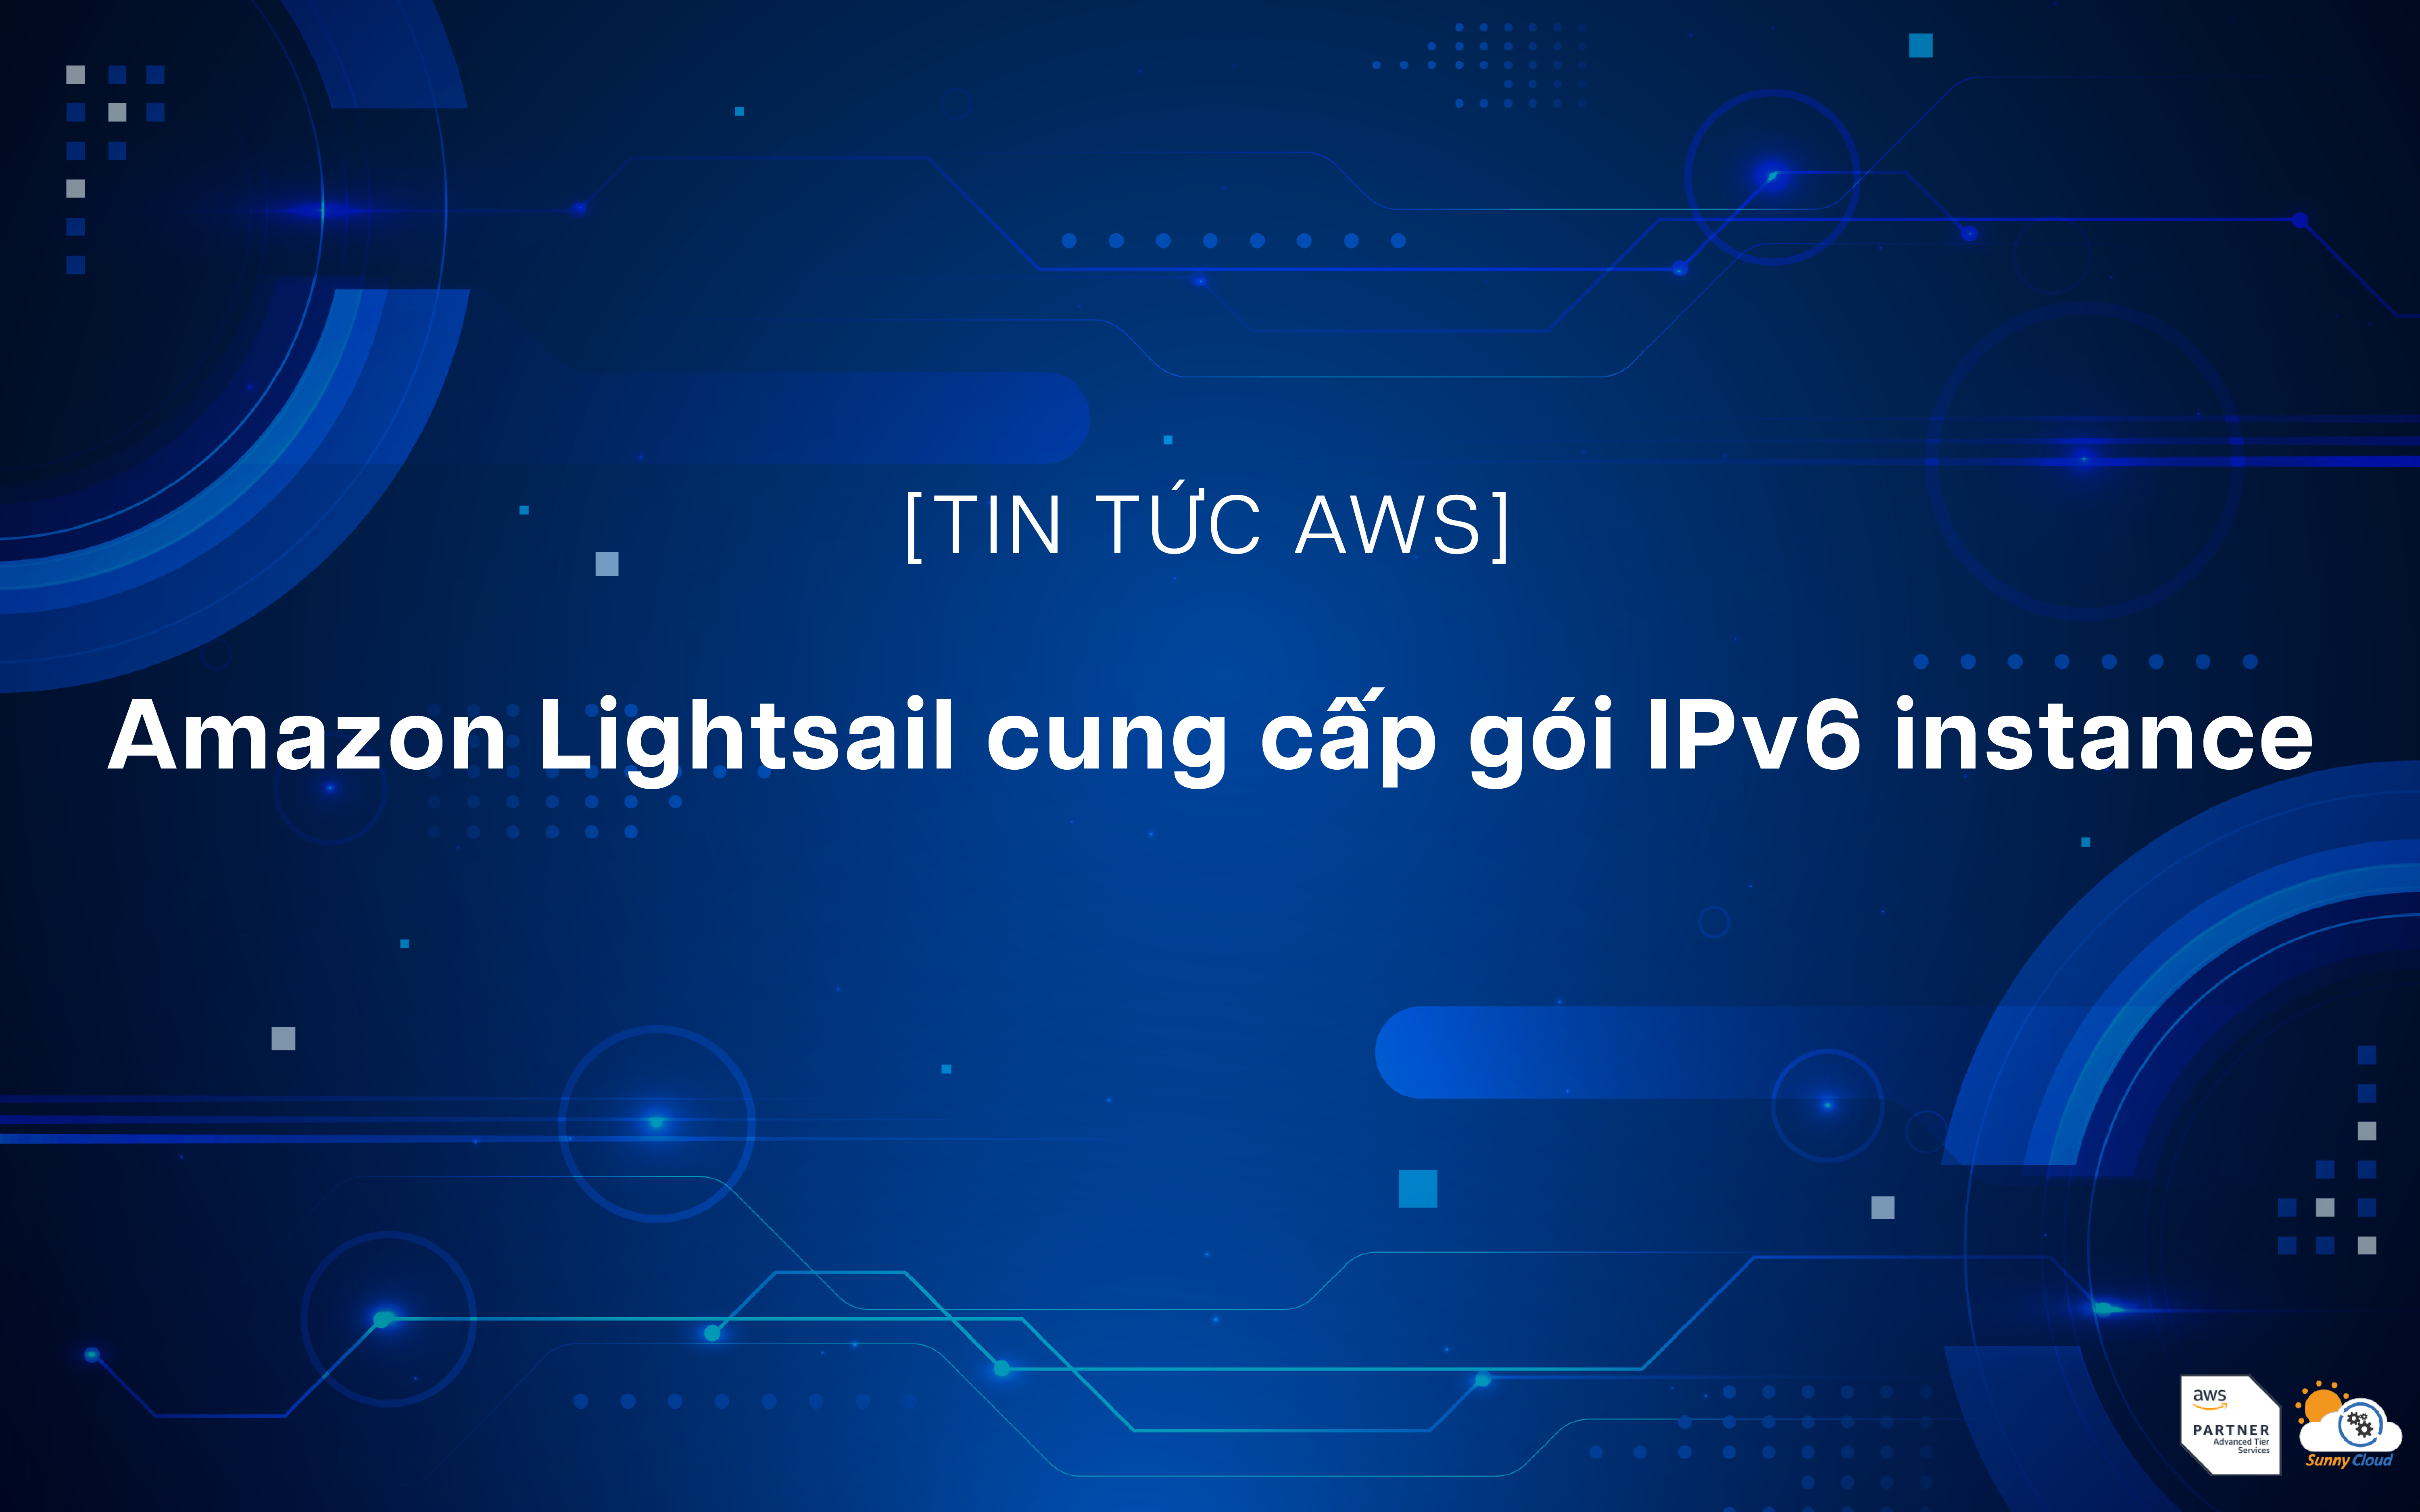 Amazon Lightsail cung cấp gói IPv6 instance